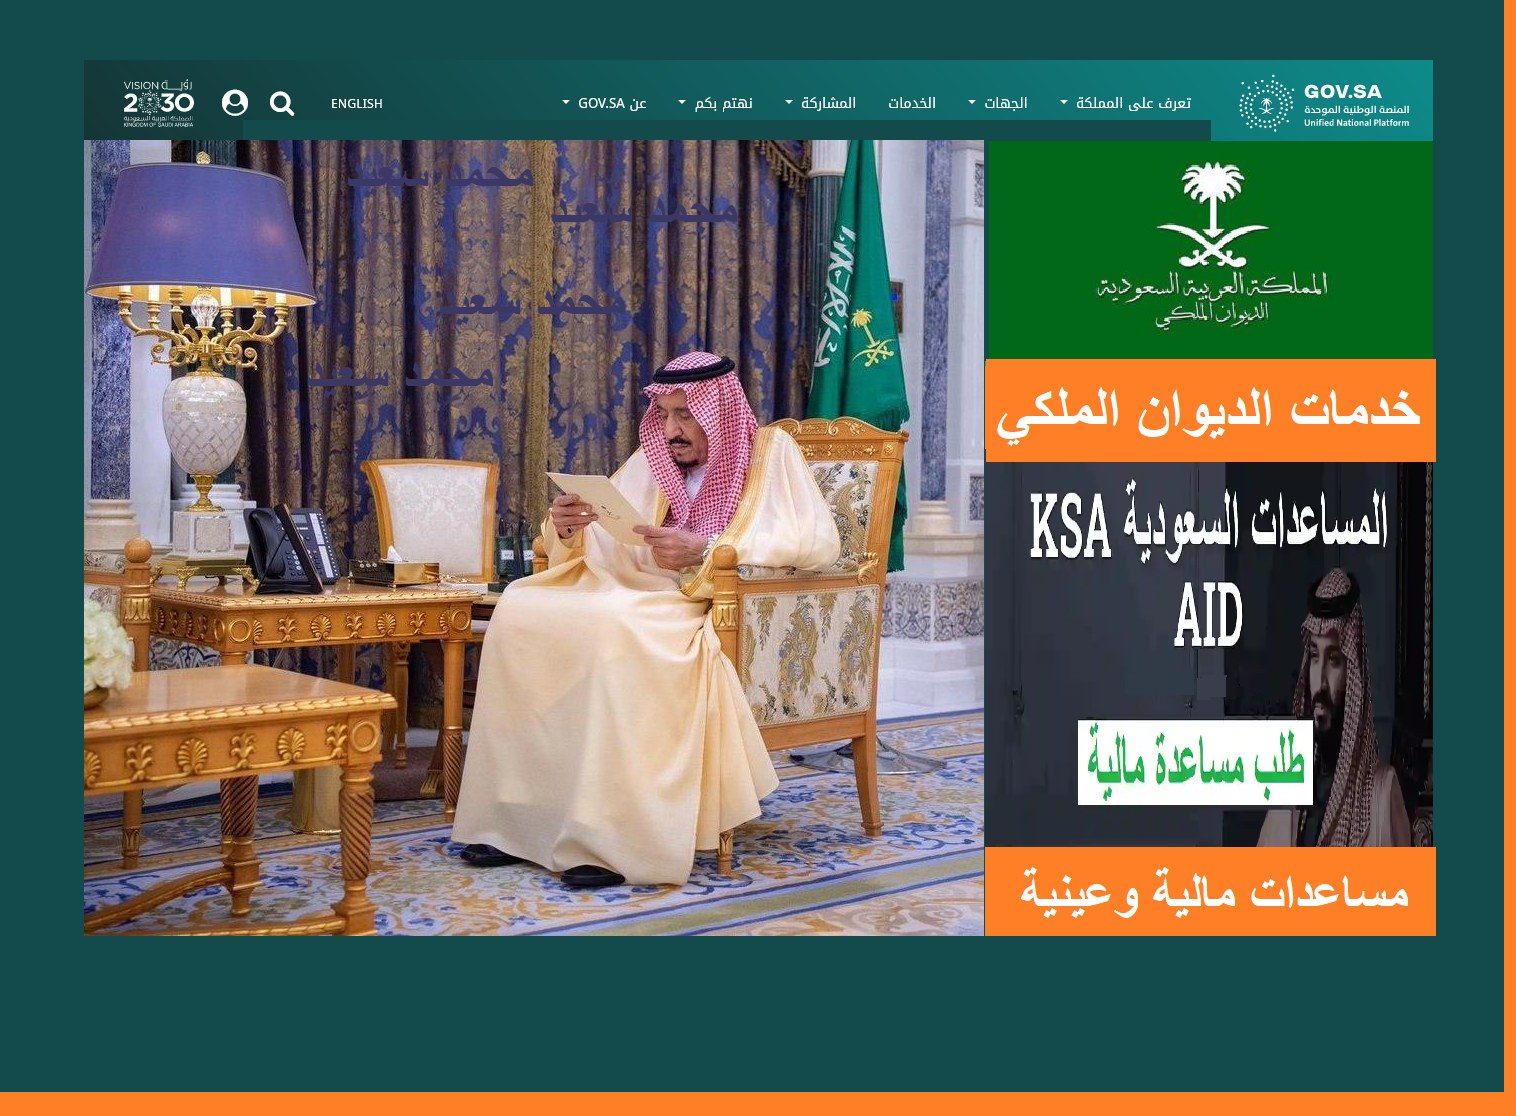 تواصل ديوان المساعدات الملكي السعودي "مالية - سداد مديونية - أراضي مجانية" عطاء غير محدود